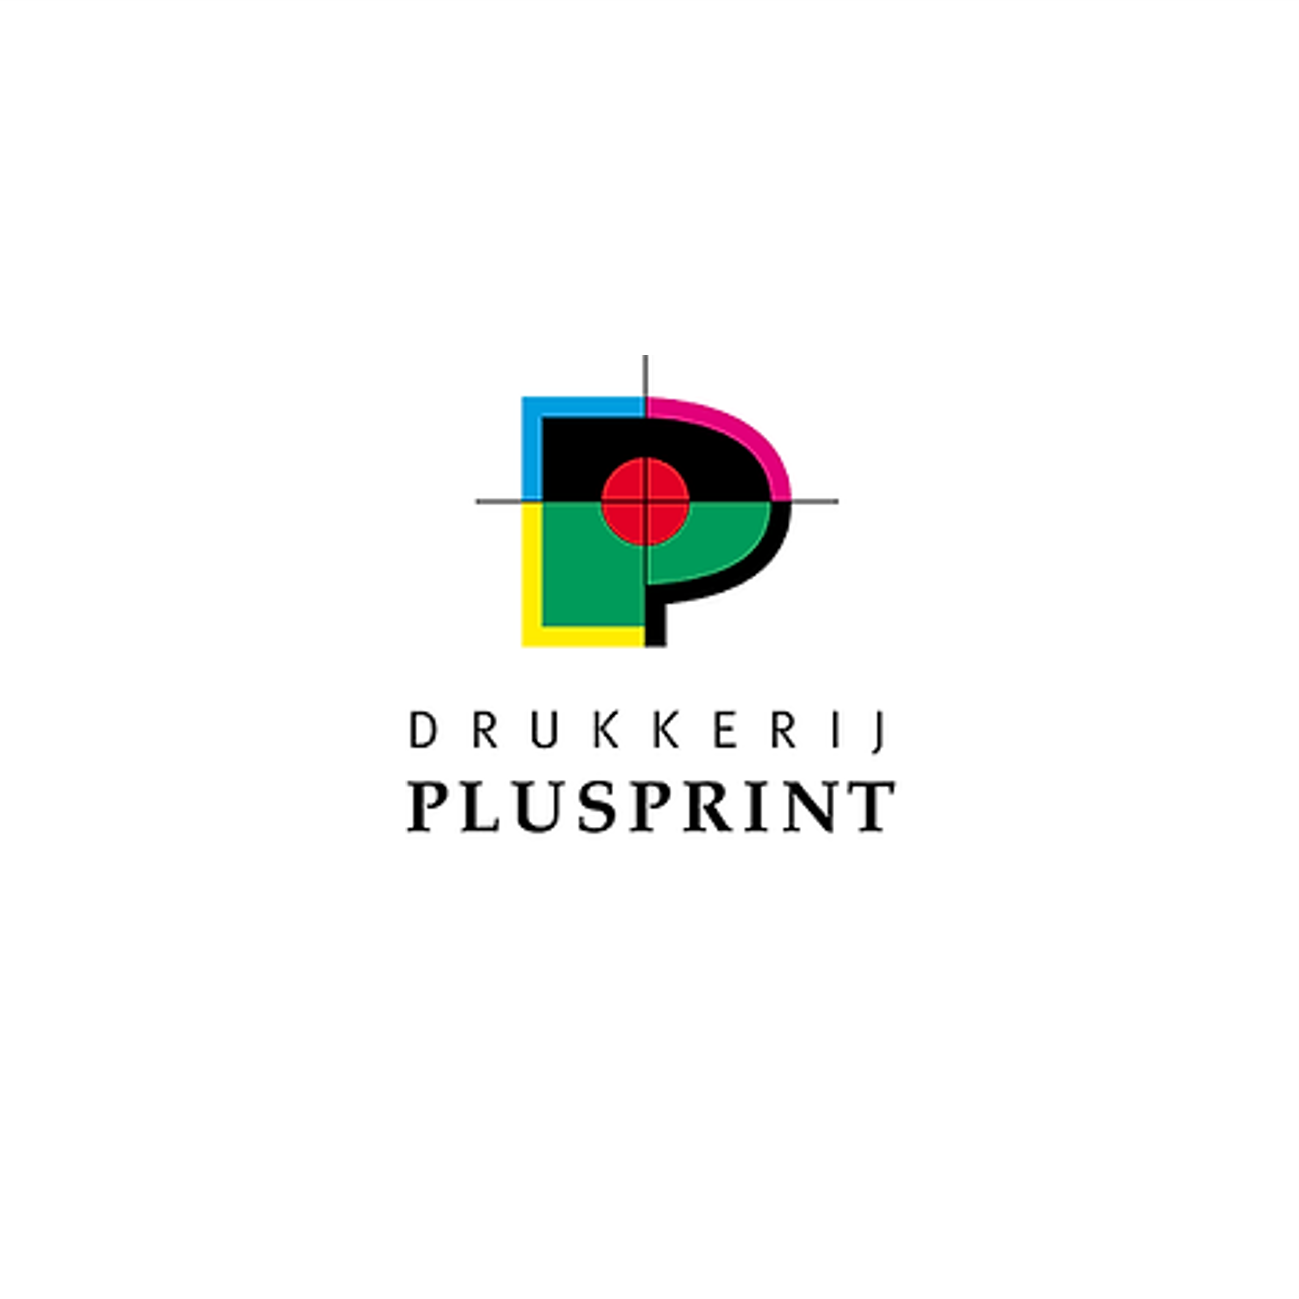 Drukkerij Plusprint is Capabel